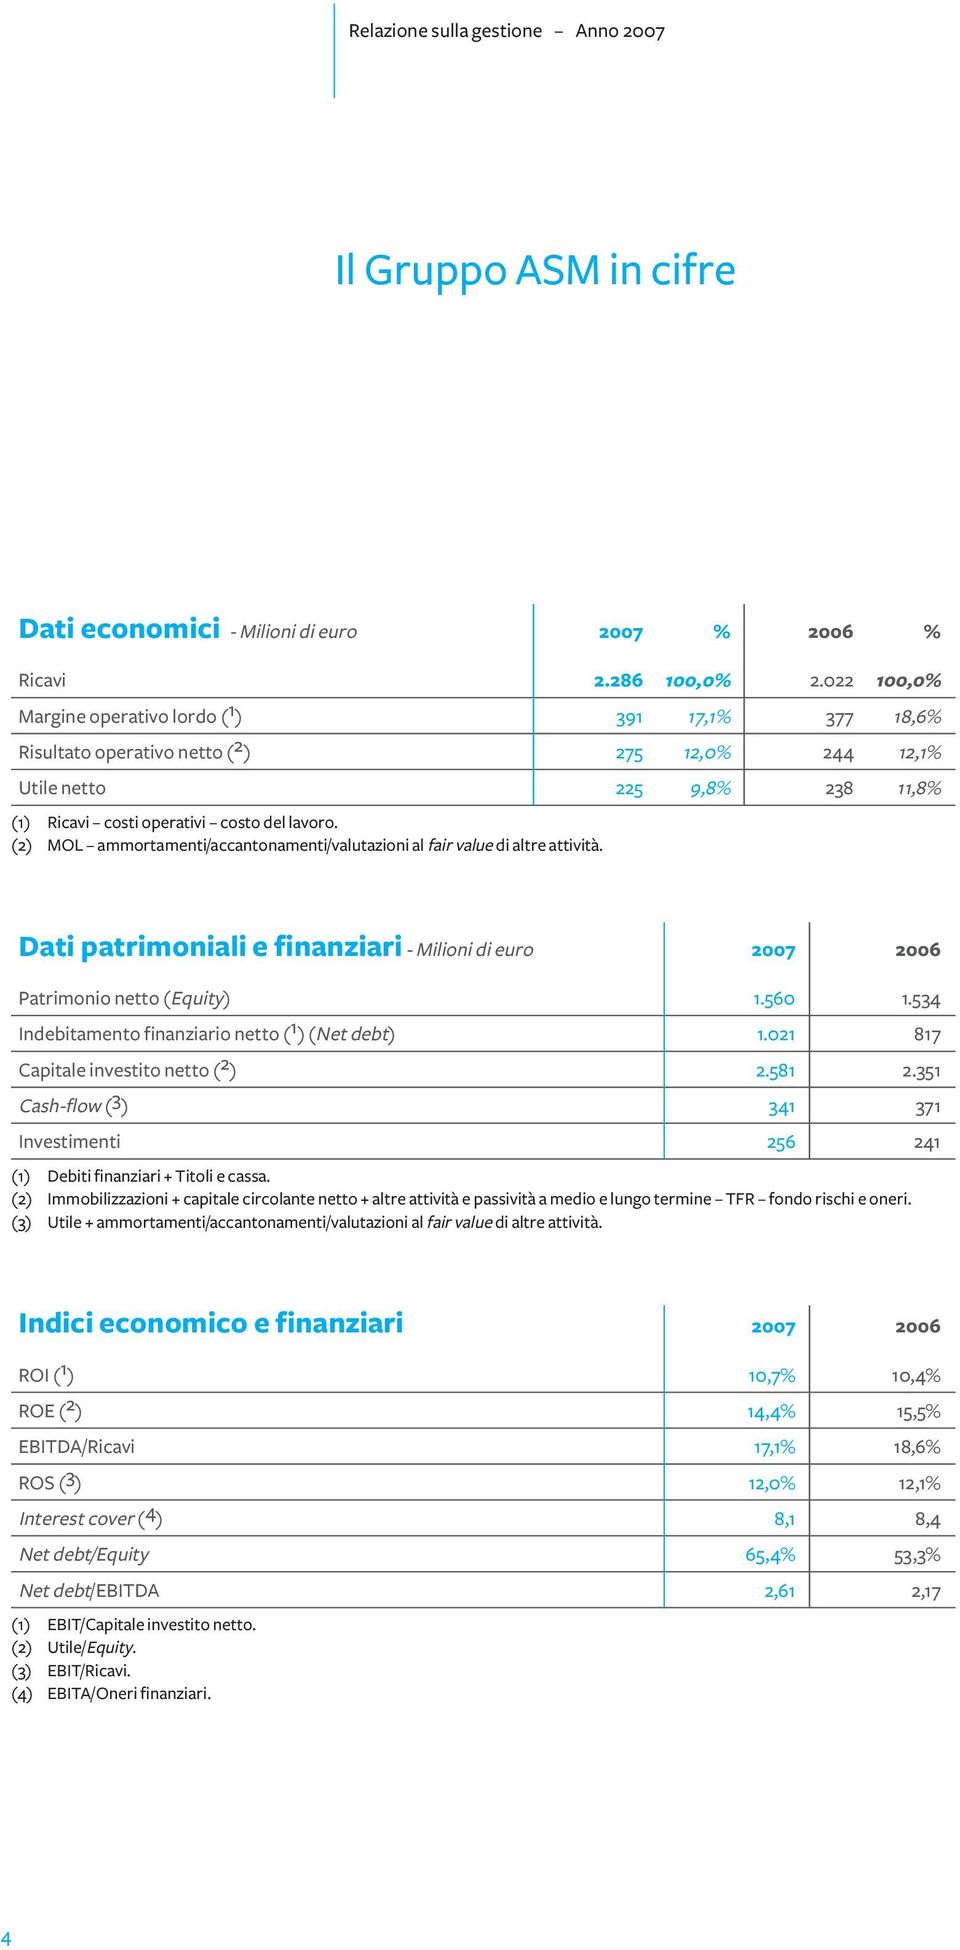 (2) MOL ammortamenti/accantonamenti/valutazioni al fair value di altre attività. Dati patrimoniali e finanziari - Milioni di euro 2007 2006 Patrimonio netto (Equity) 1.560 1.